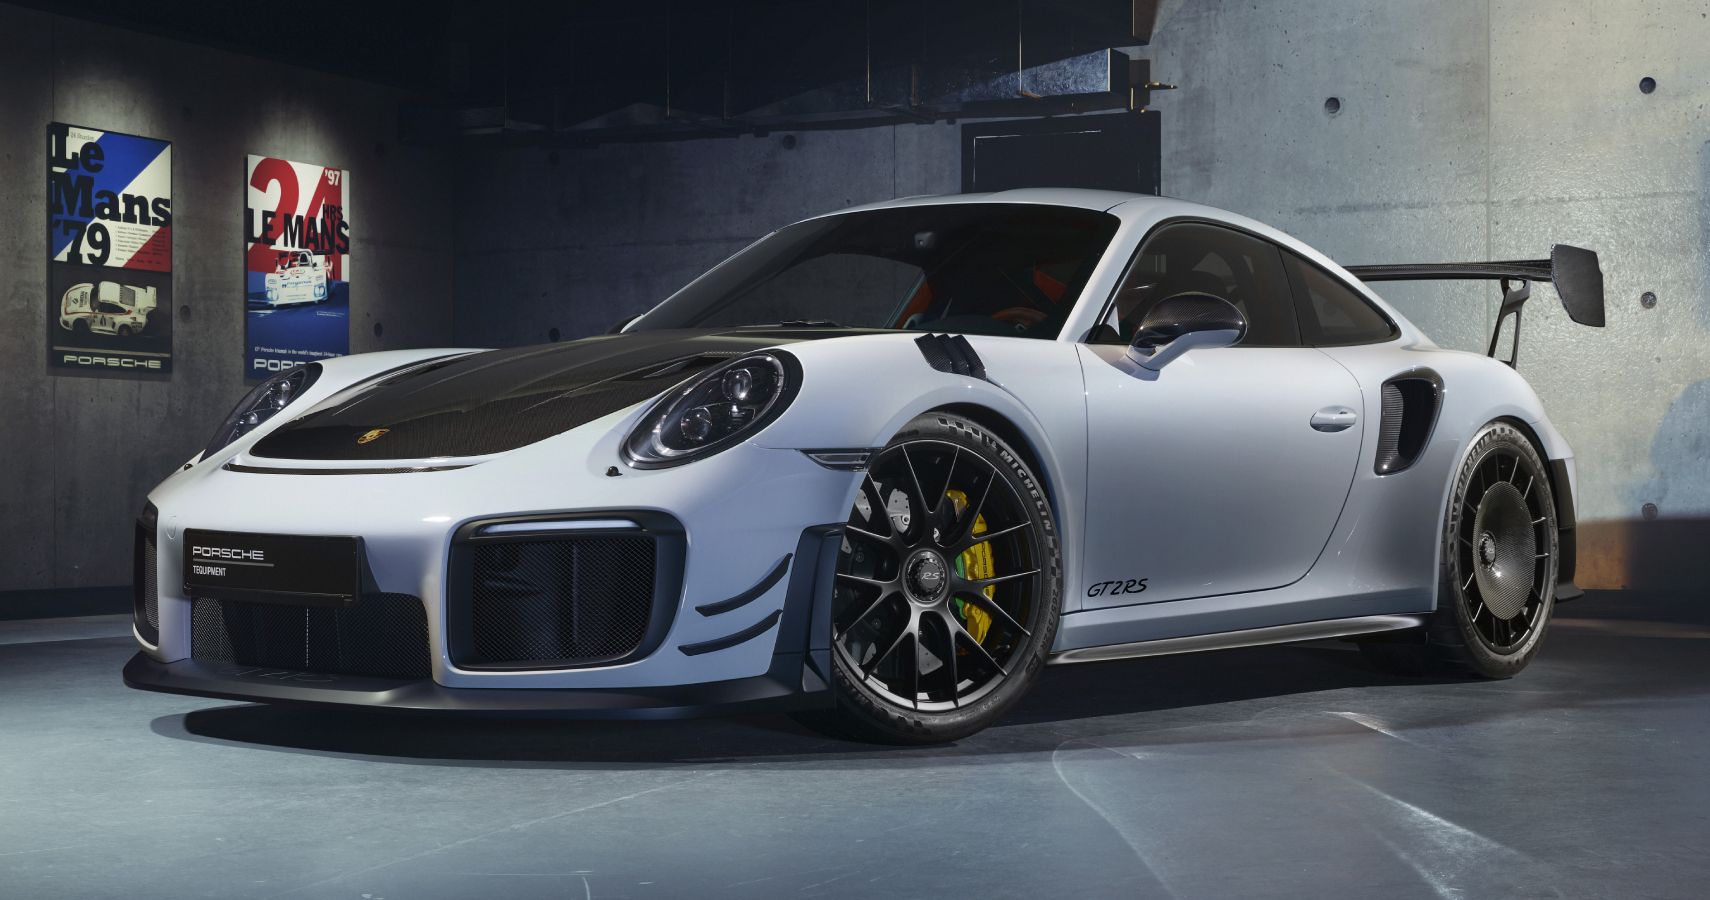 Gray 2019 Porsche 911 GT2 RS parked indoors under studio lighting